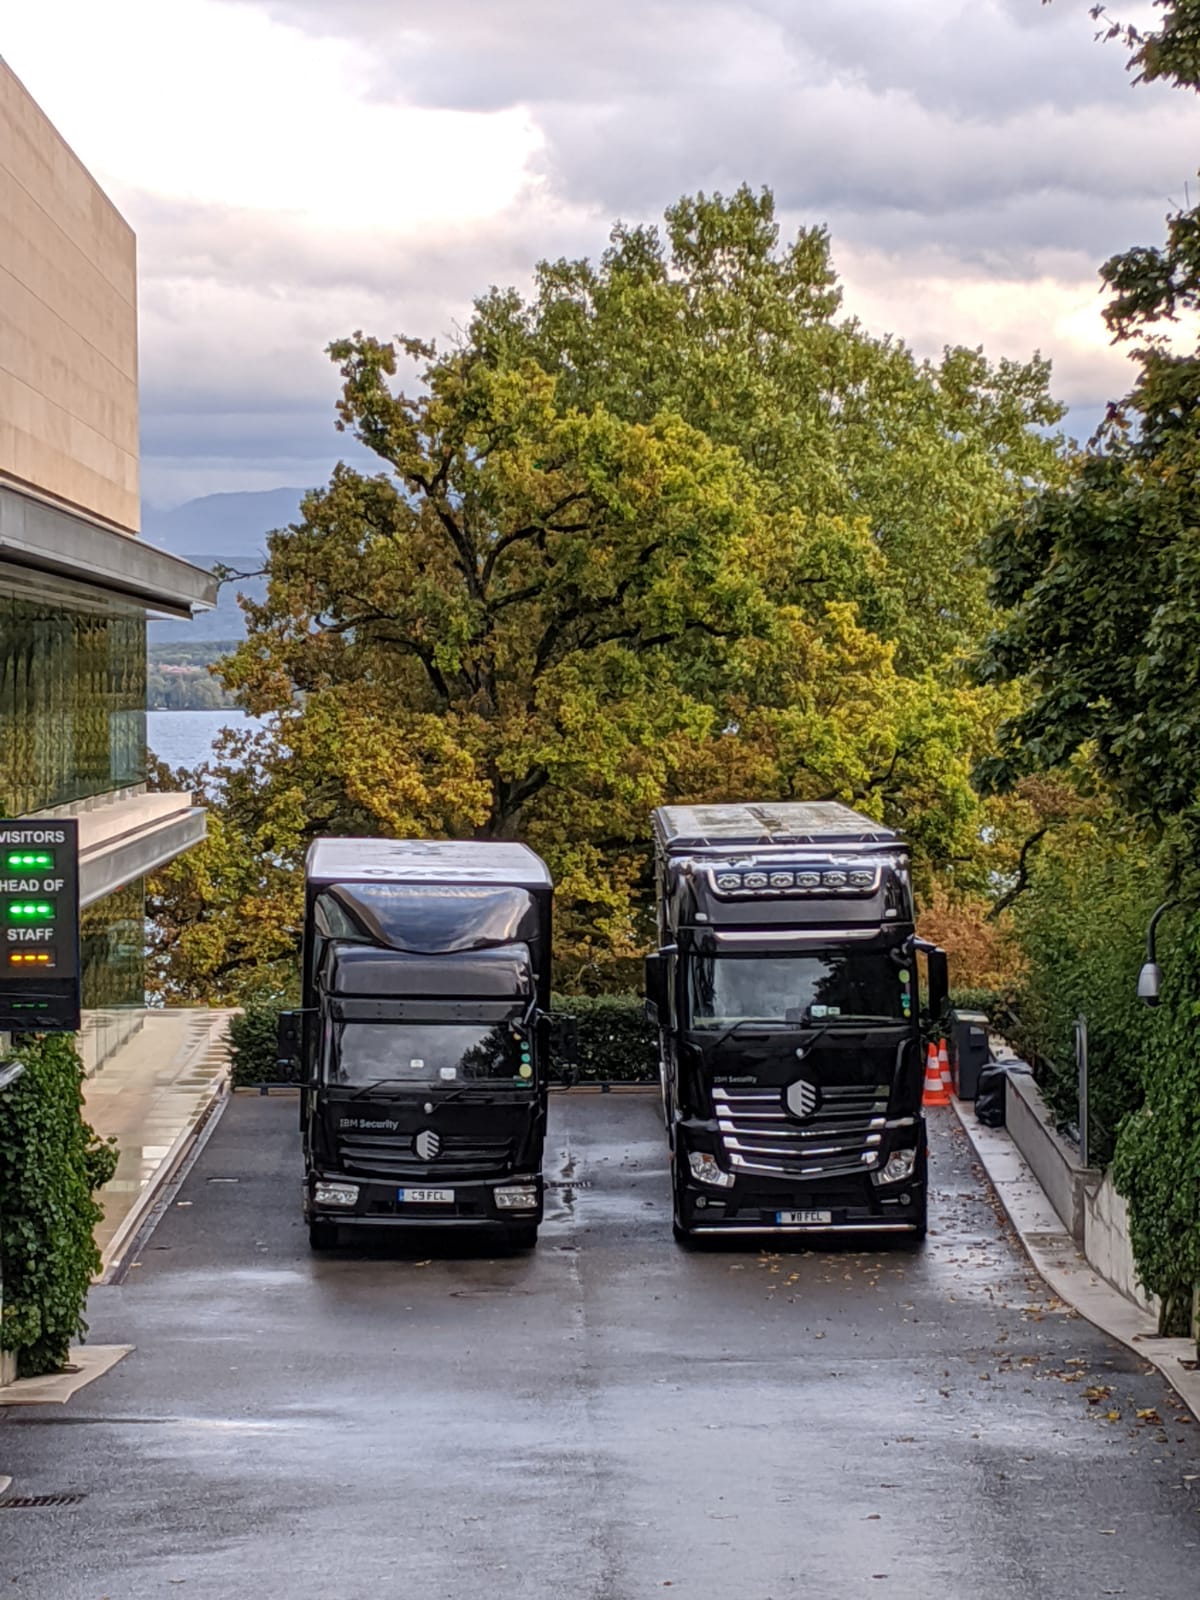 Two black IBM trucks